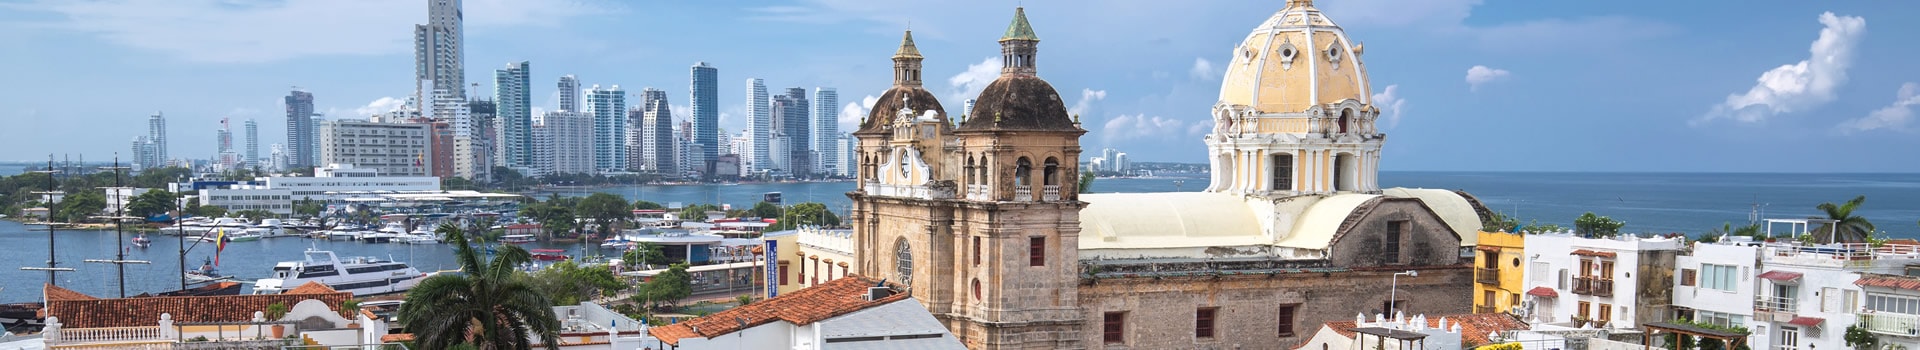 Bogota - Cartagena de indias